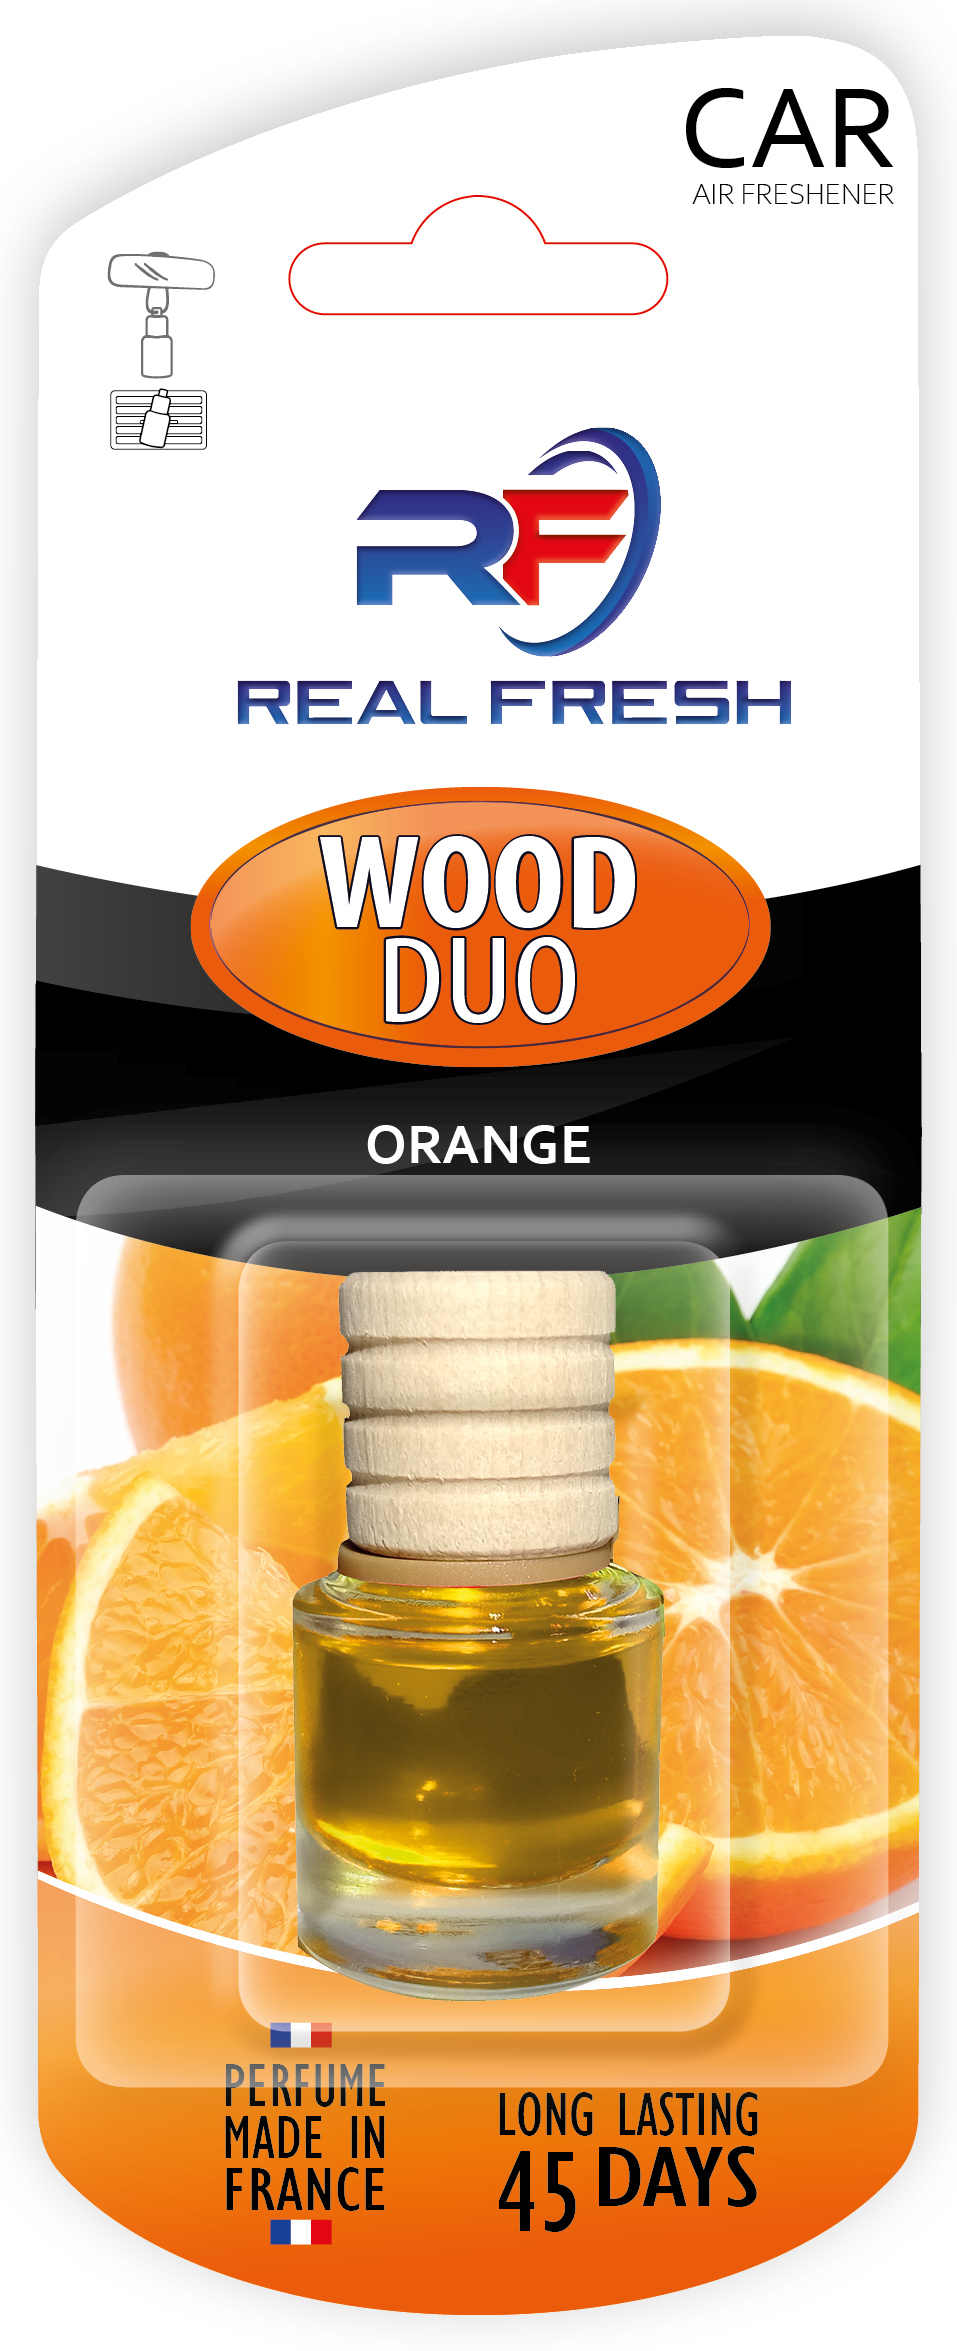 WOOD DUO Orange Image